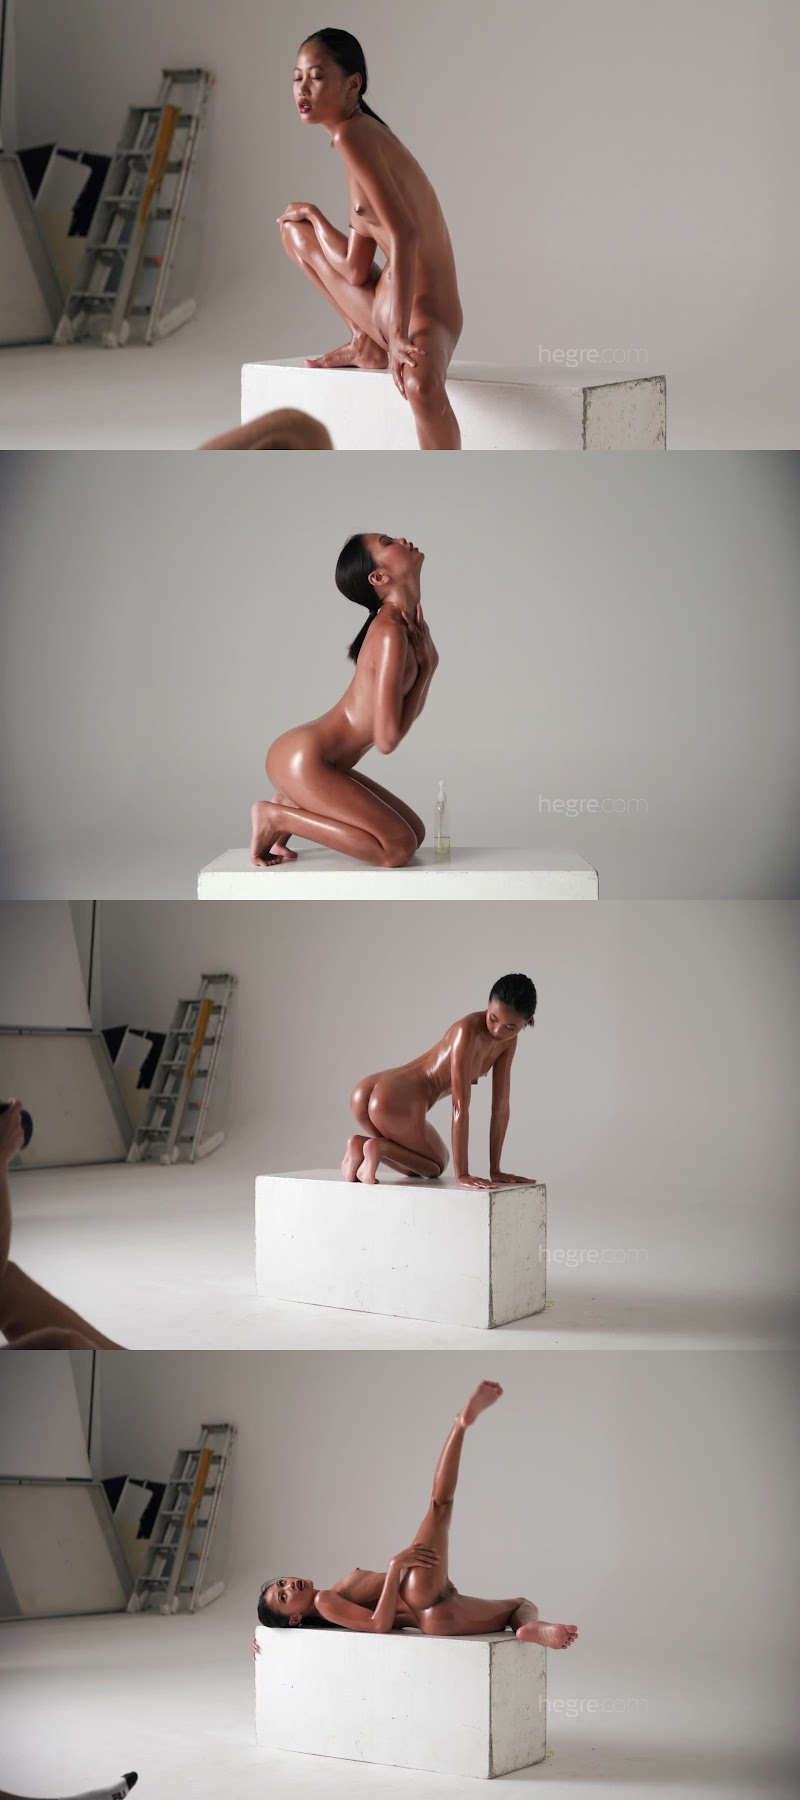 [Art] Hiromi - Nude Modeling jav av image download